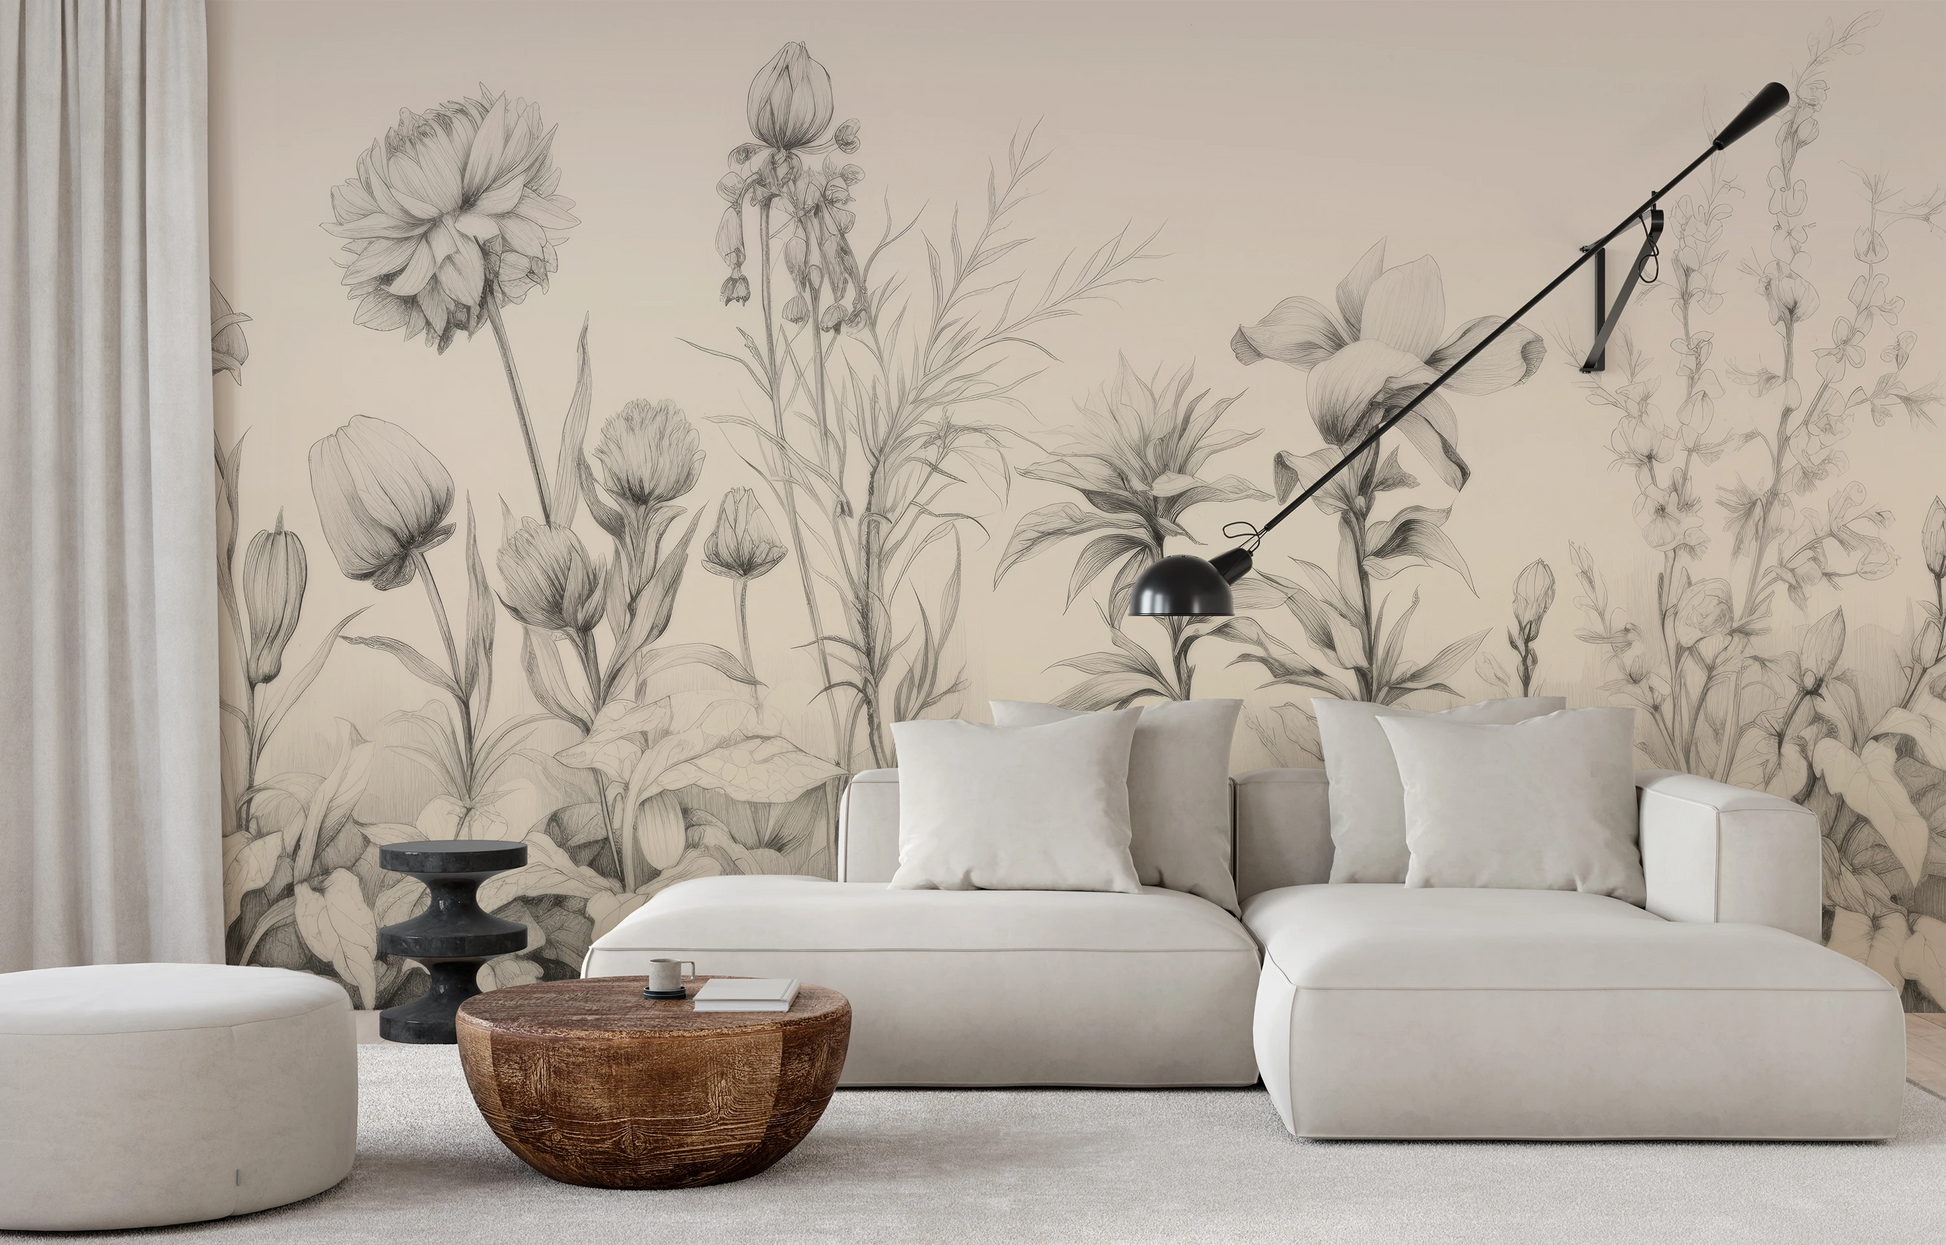 Wzór fototapety malowanej o nazwie Floral Tranquility pokazanej w aranżacji wnętrza.